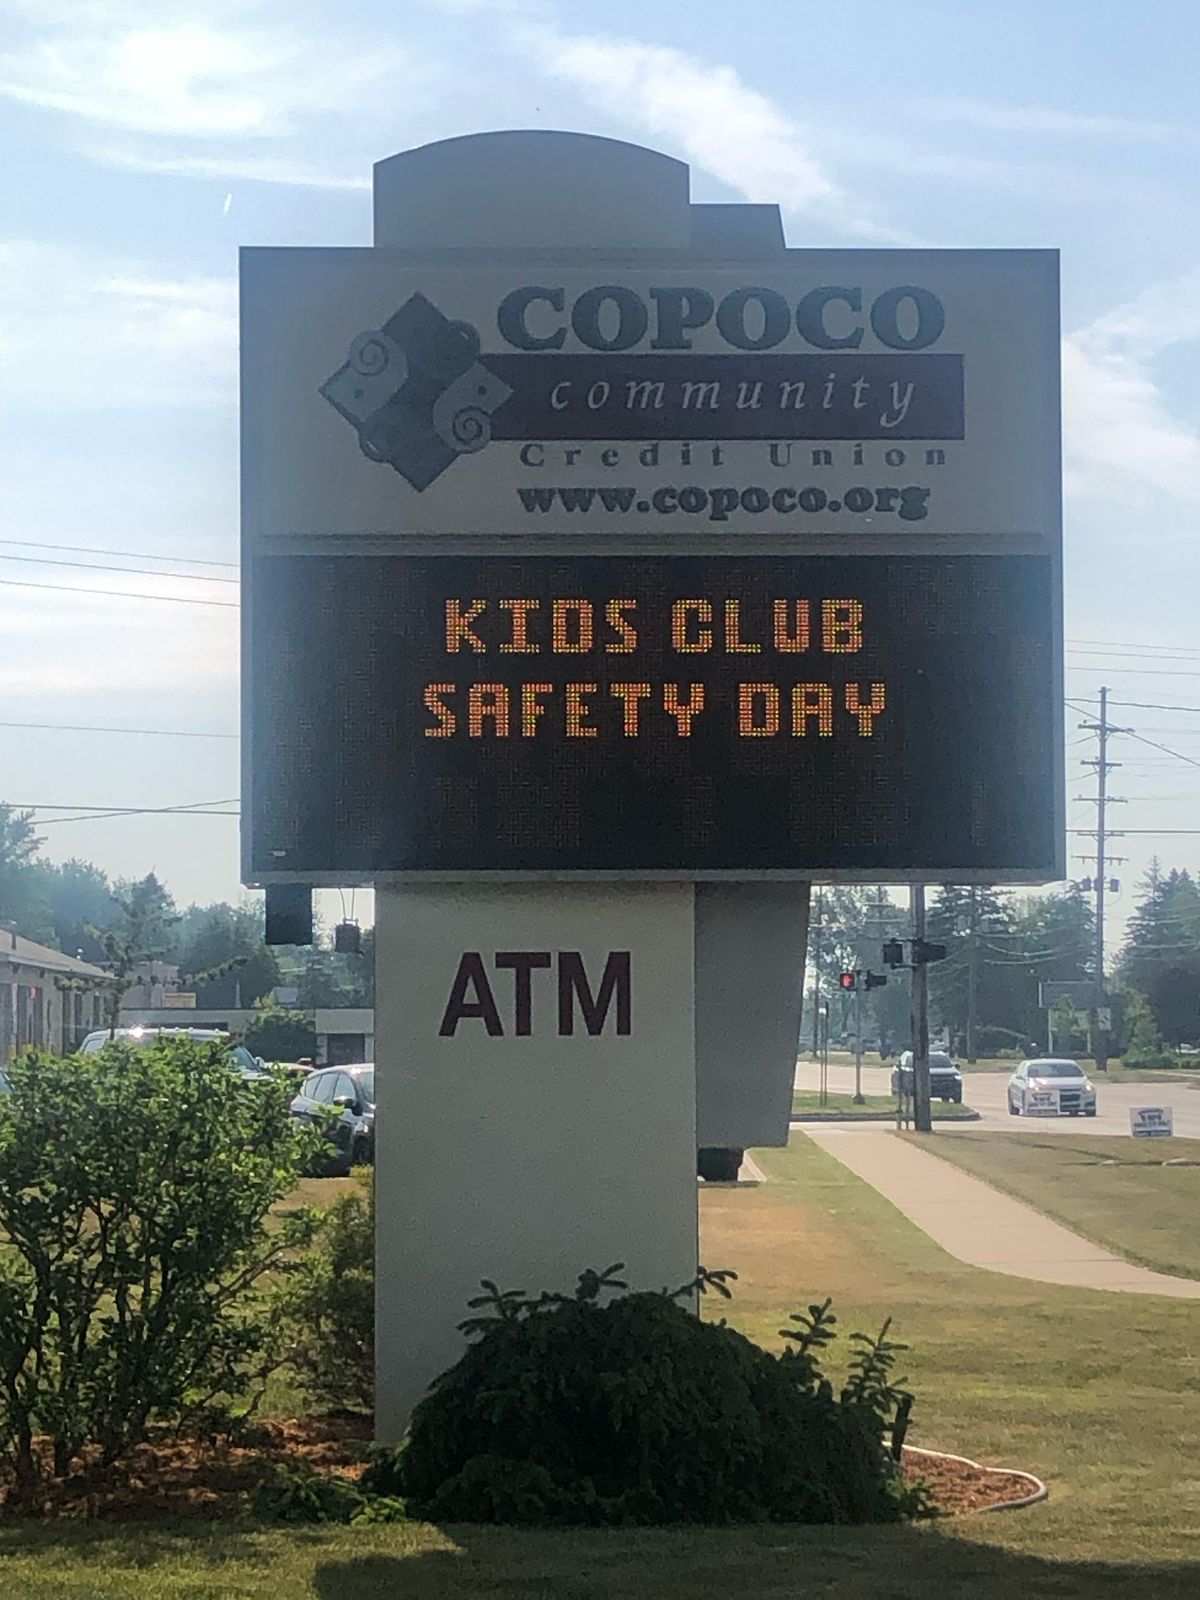 COPOCO Kids Club Safety Day